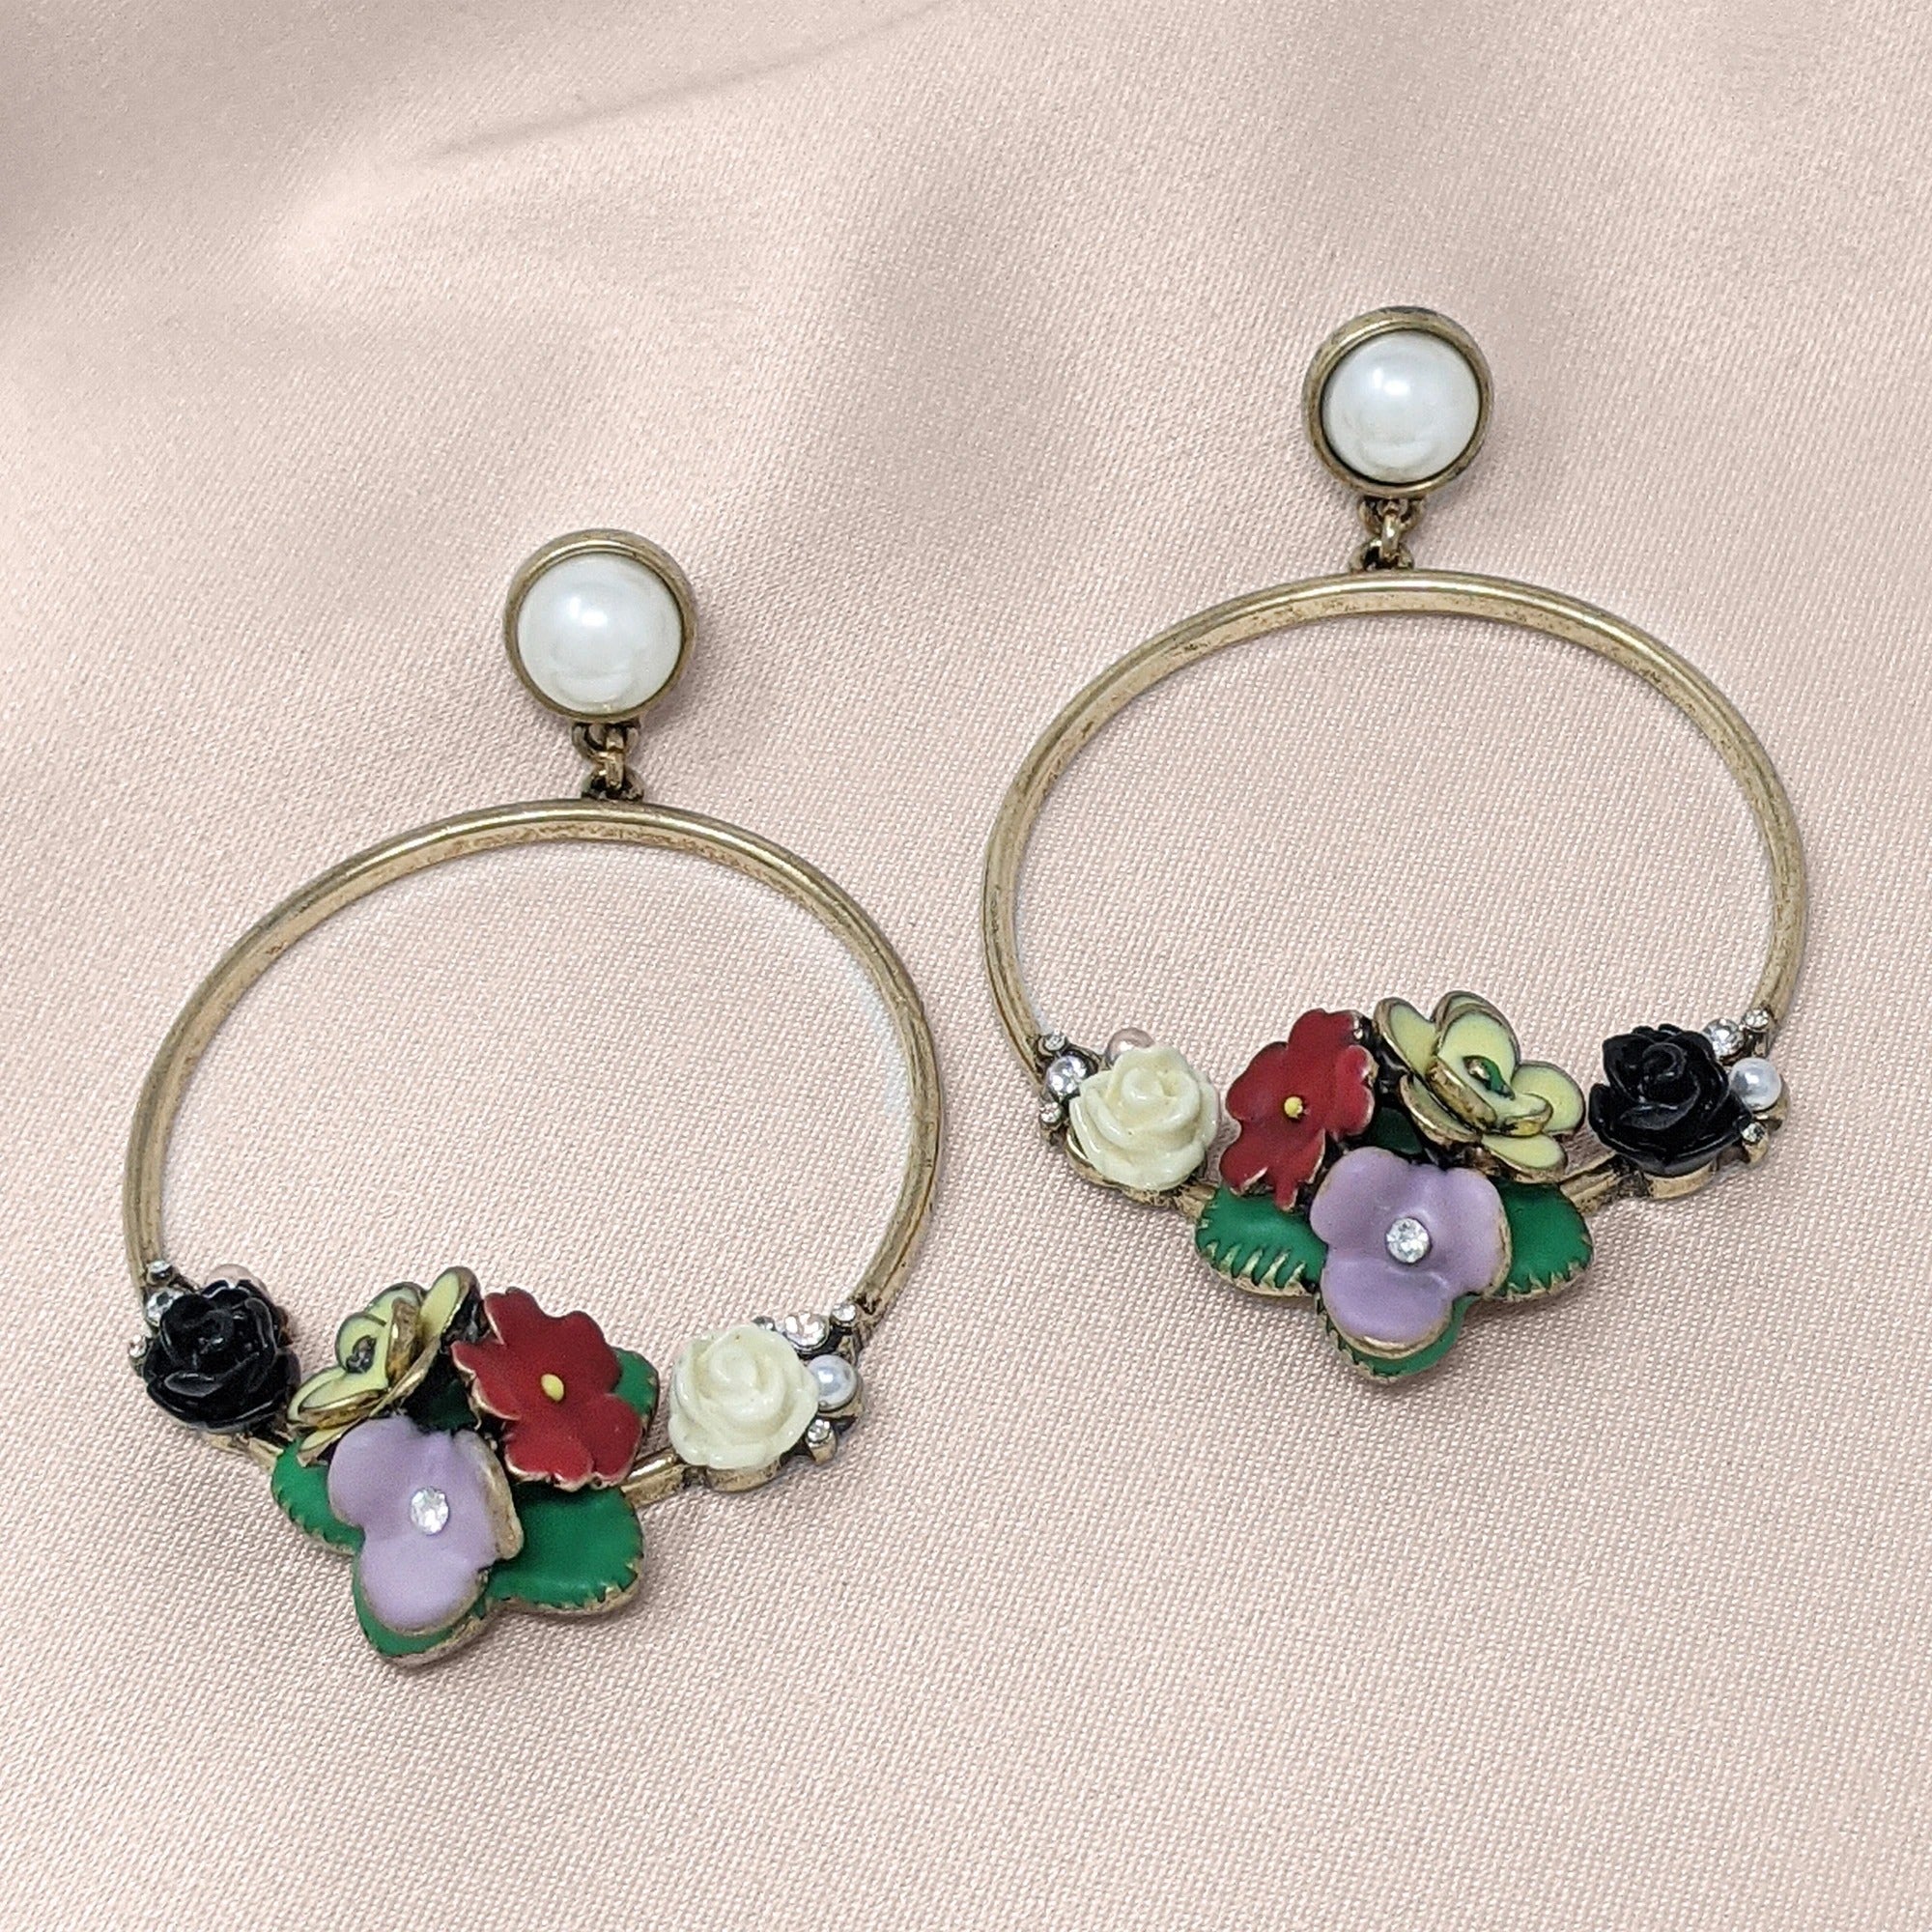 Lovett Earrings - Frida Flower Hoop